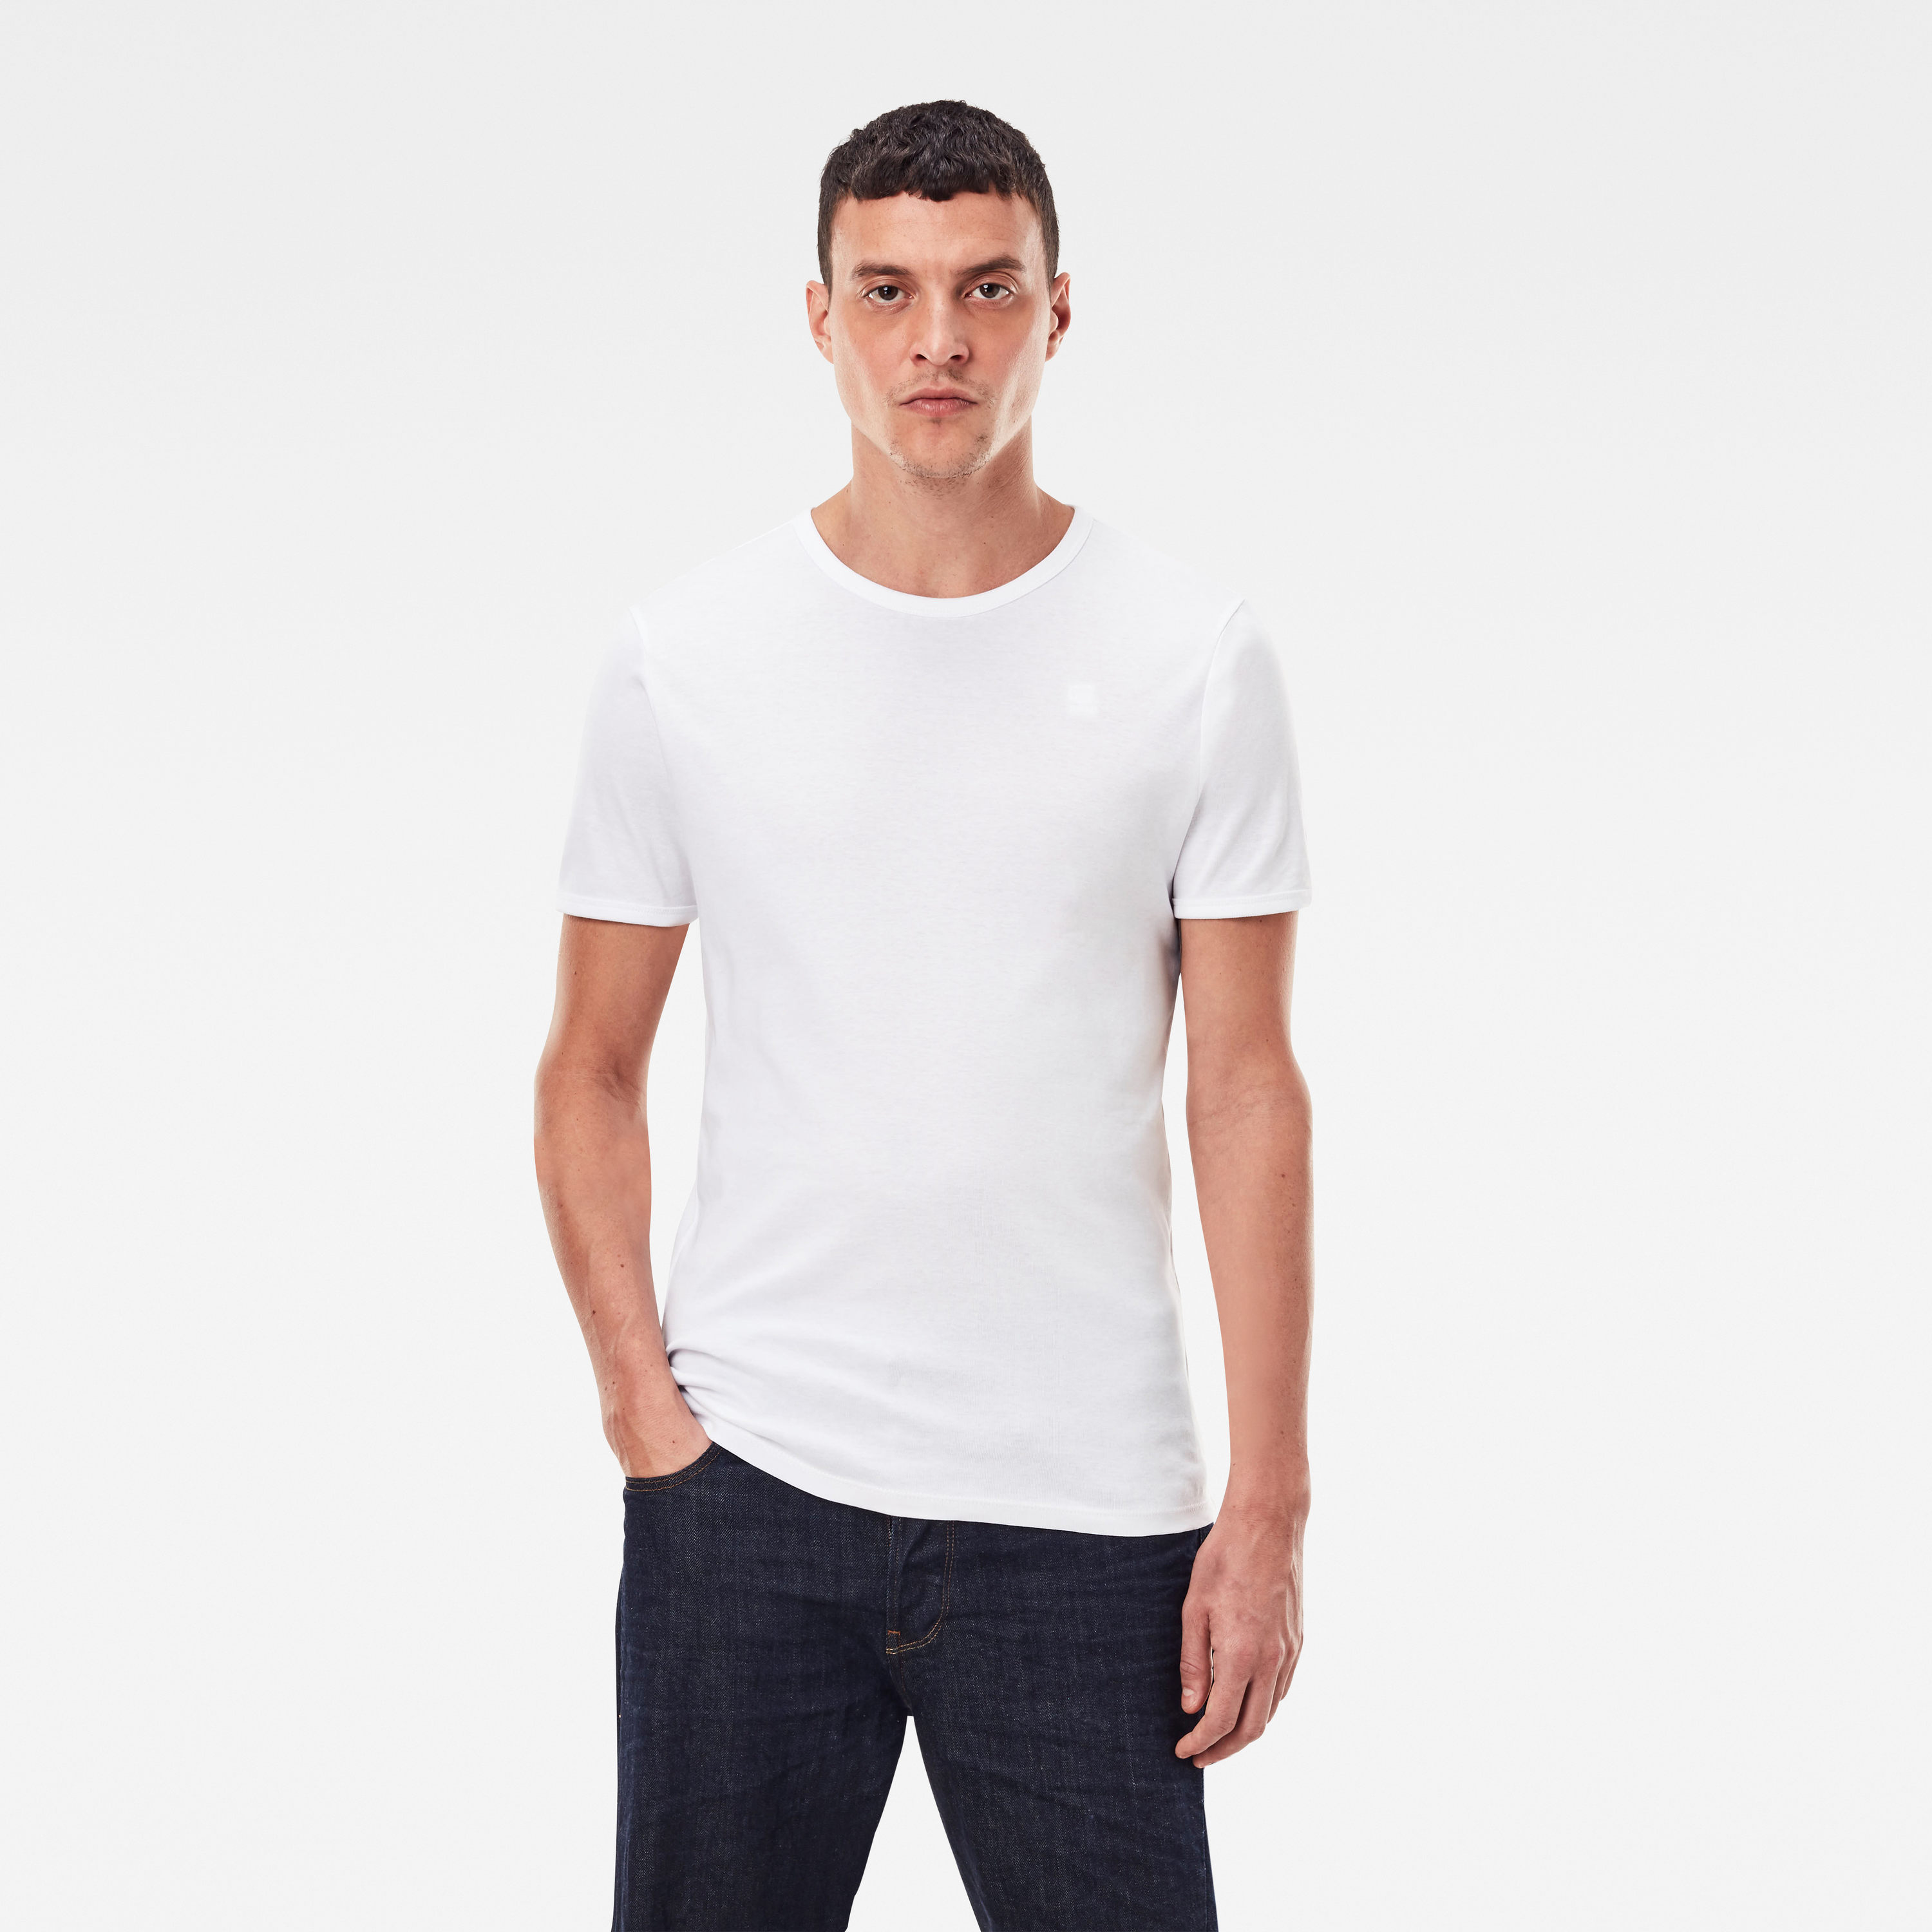 G-Star Raw Round Neck Doppelpack Basic T-Shirt weiß anthrazit D07205 124 8991